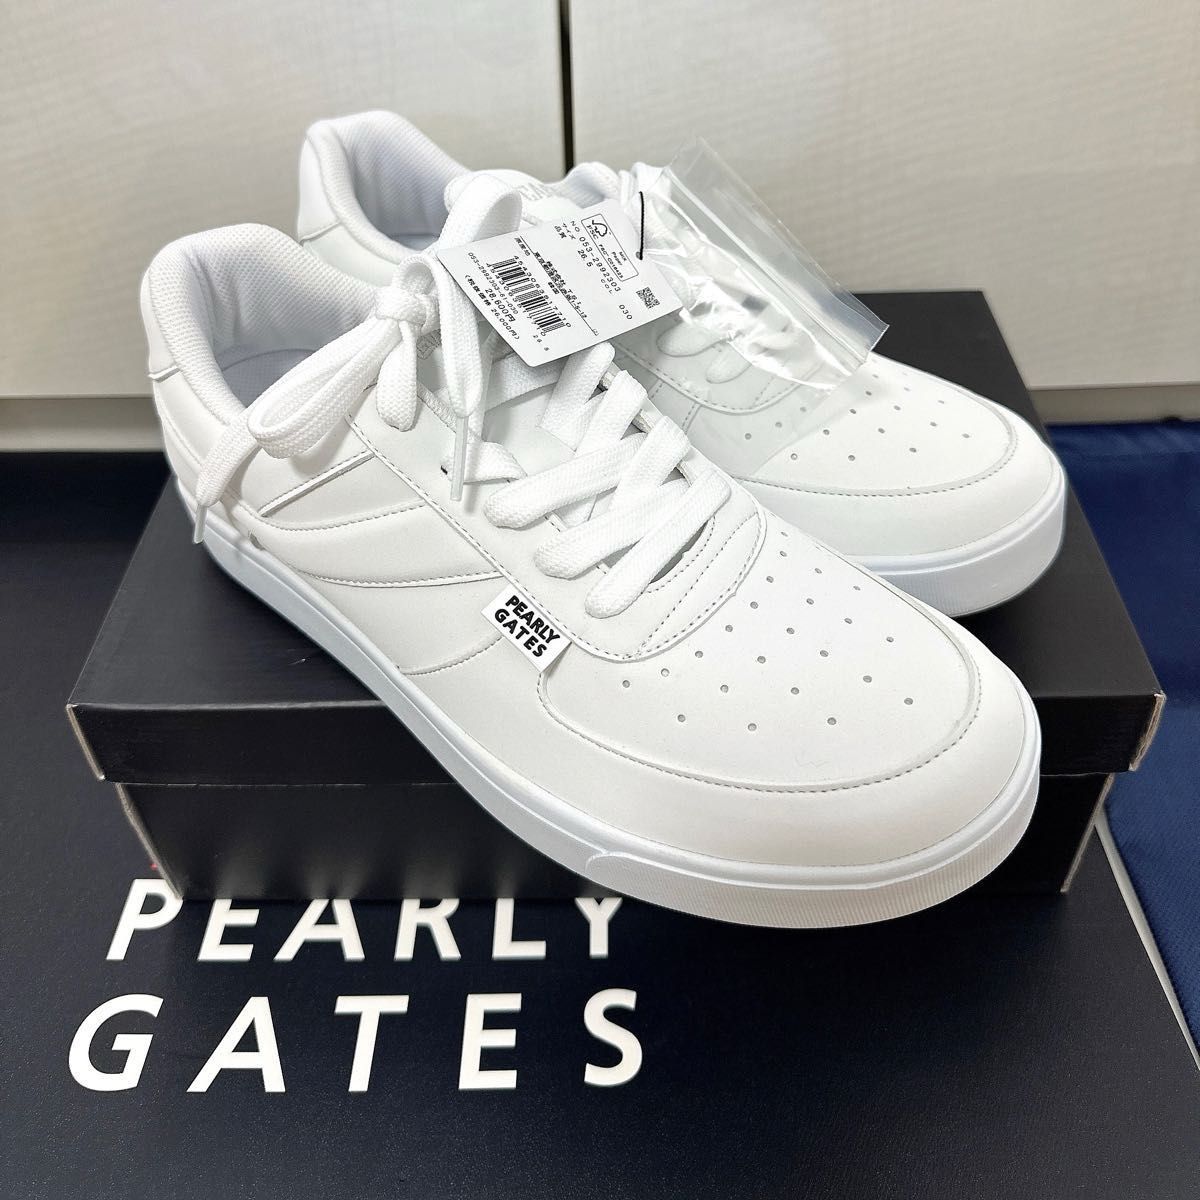 【 新品 ローカット PEARLY GATES 】 パーリーゲイツ 27.0cm シューズ ホワイト スパイク 正規品 スニーカー